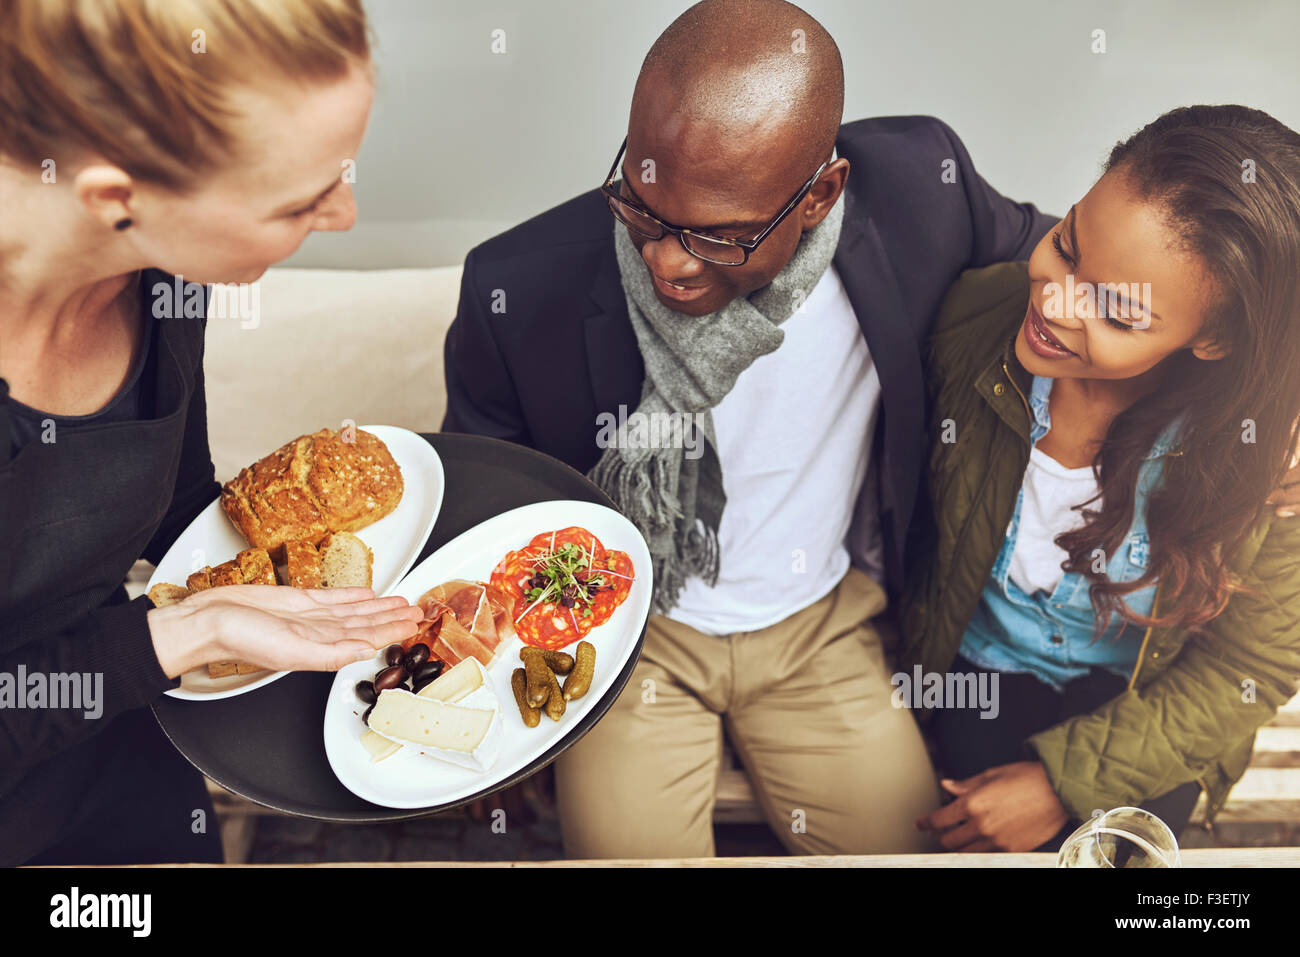 Kellnerin mit vergoldeten Küche für junge afrikanische amerikanische Kunden in einem Restaurant, erhöhte Ansicht zeigt das Essen auf den Tellern Stockfoto